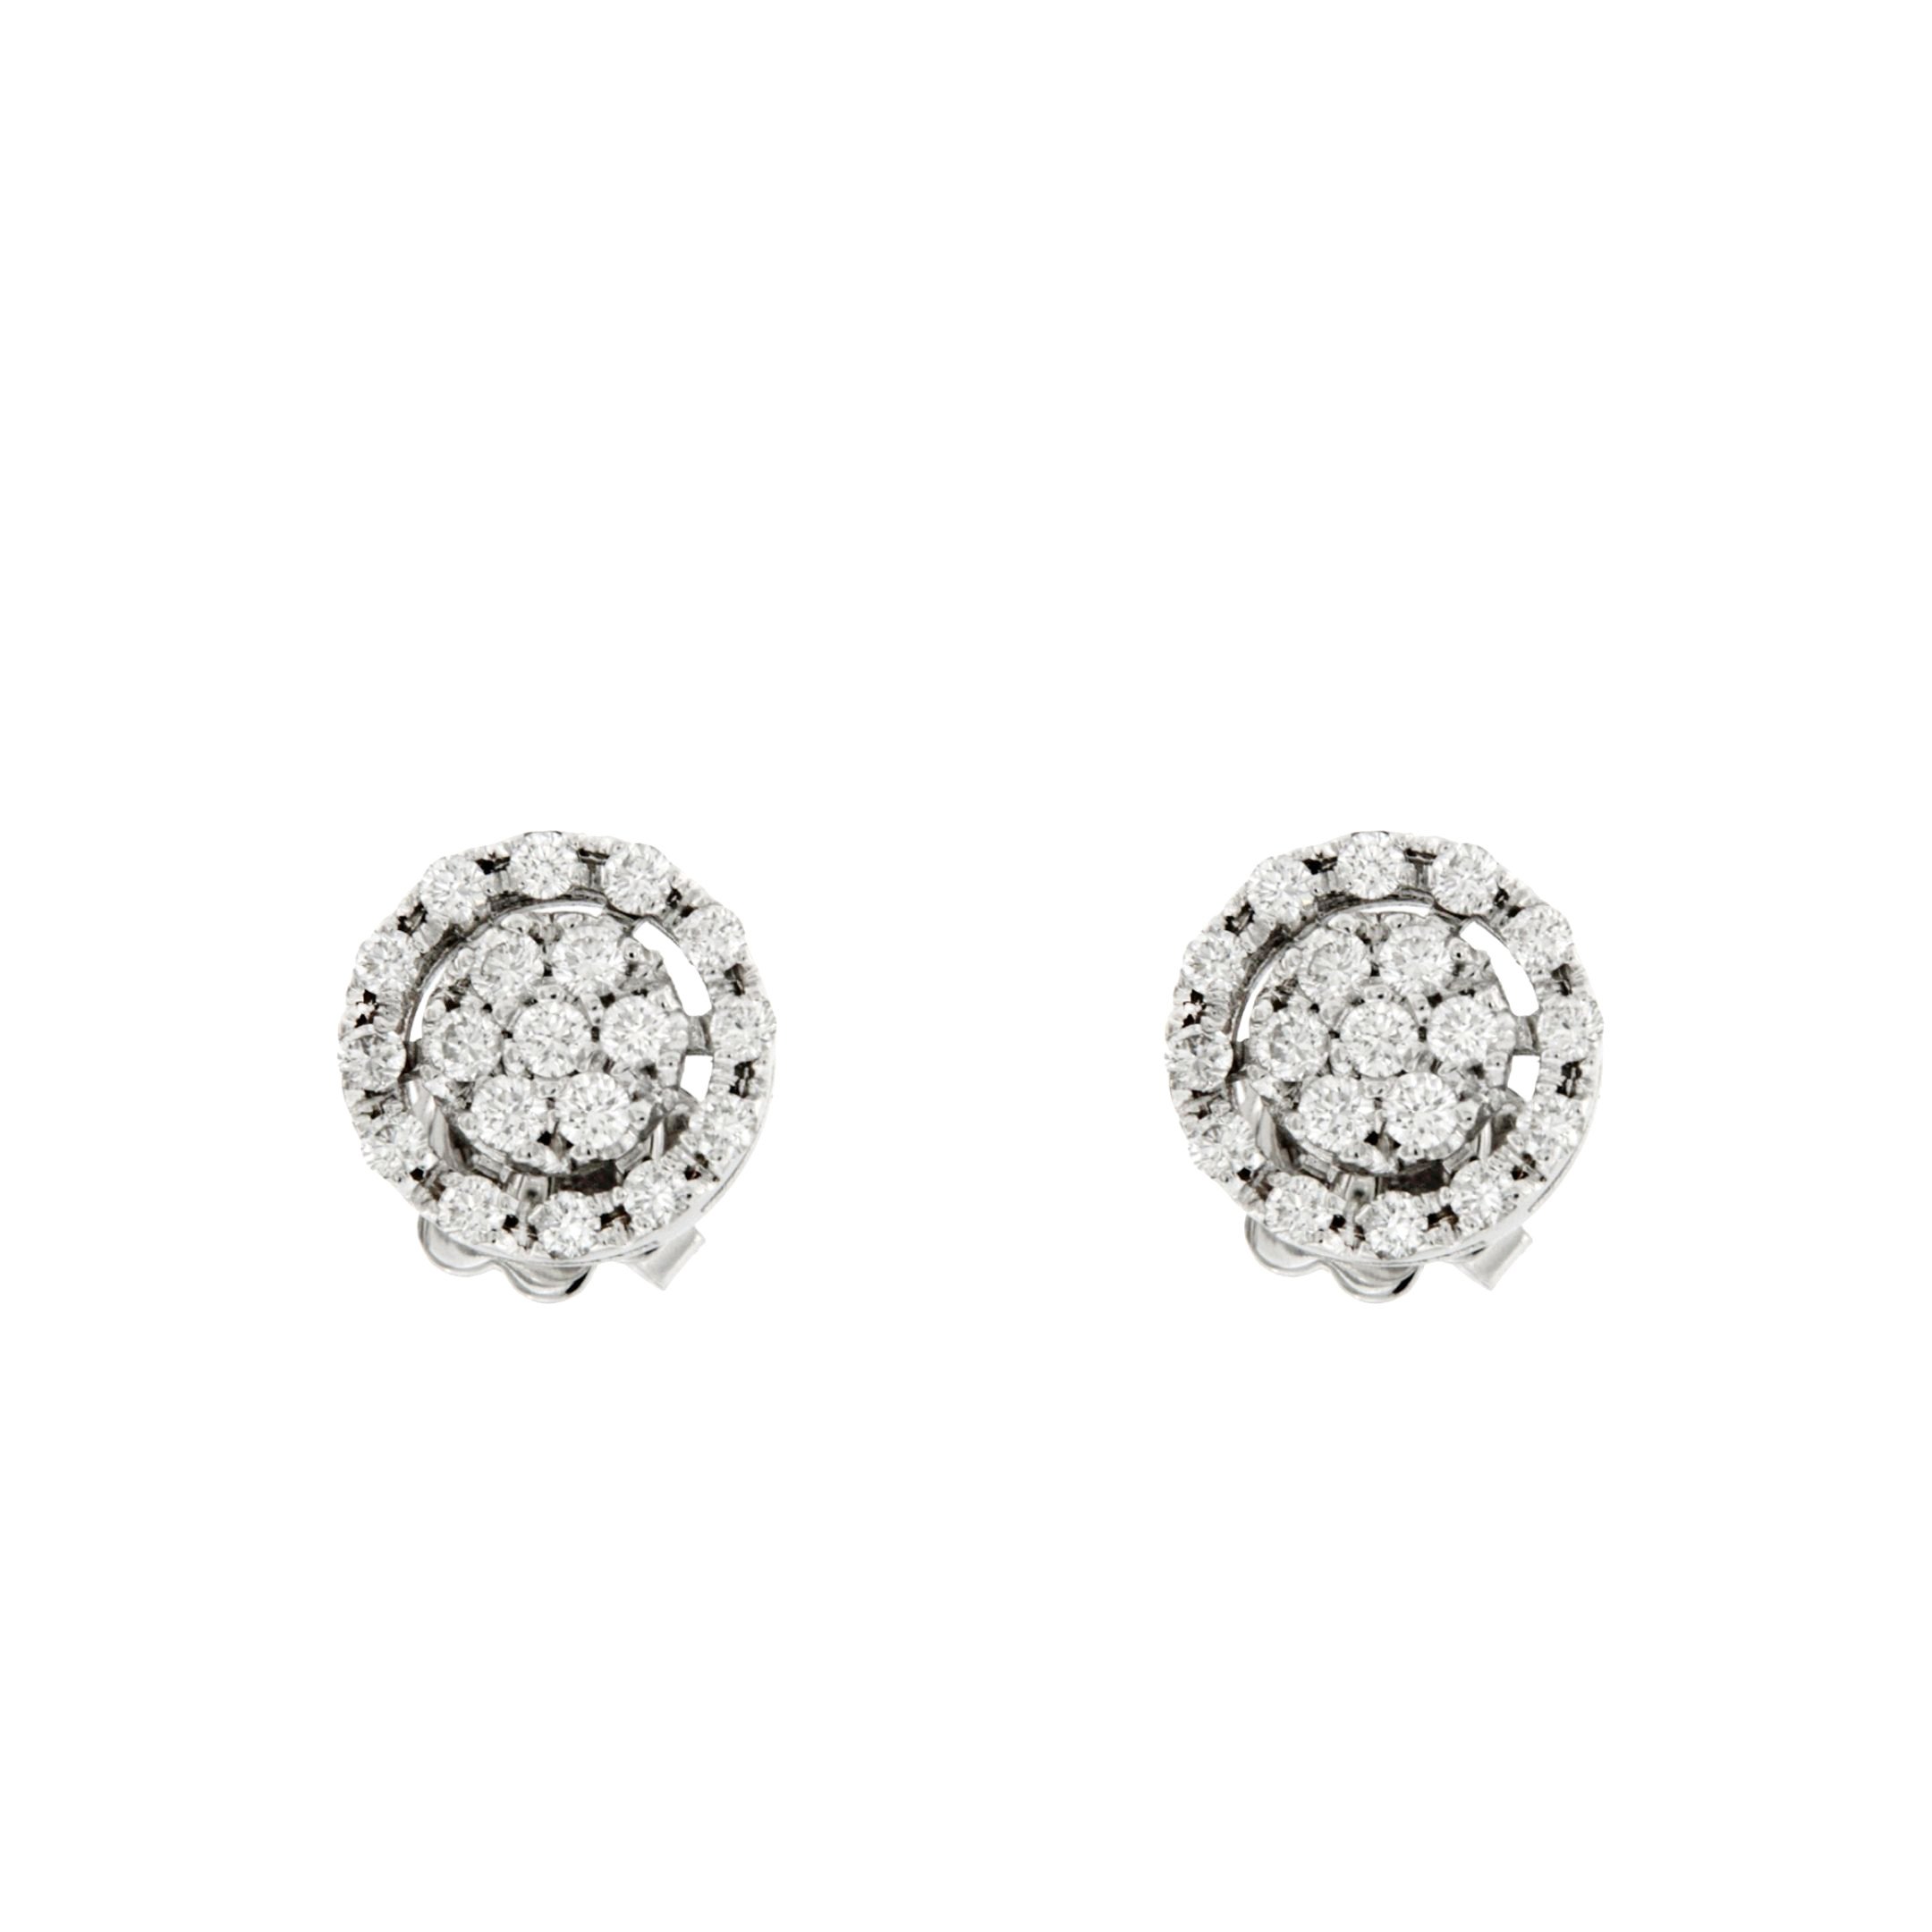 Orecchini Circles in oro bianco e brillanti earrings in white gold and diamonds sconto discount